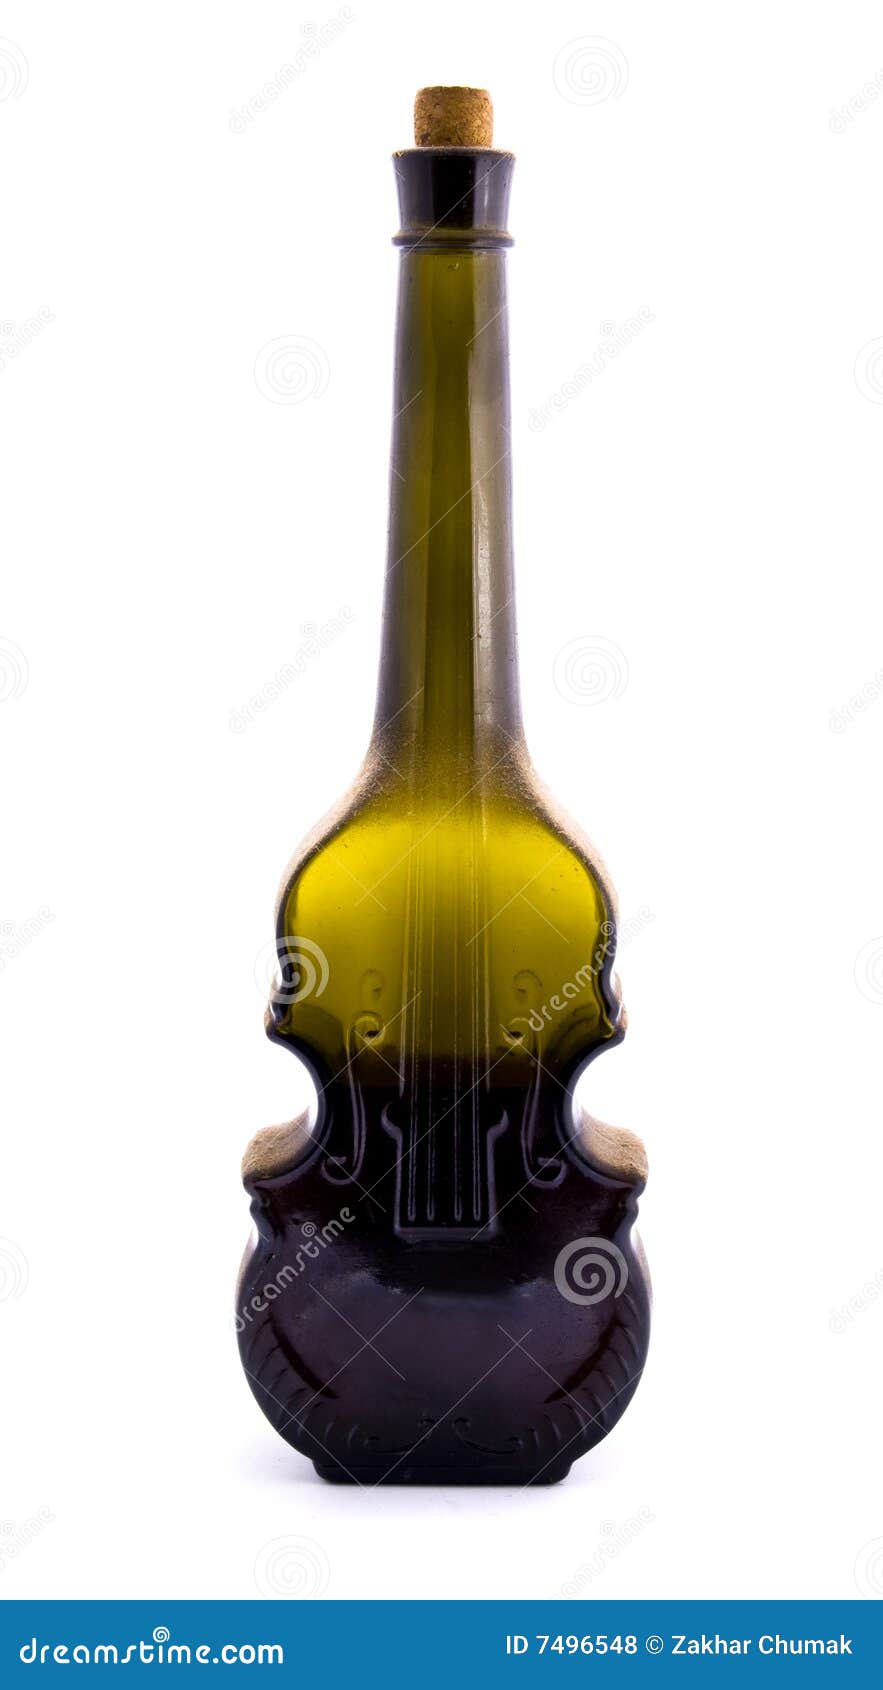 konto Miljøvenlig skrive et brev Vine violin-shaped bottle stock photo. Image of agriculture - 7496548